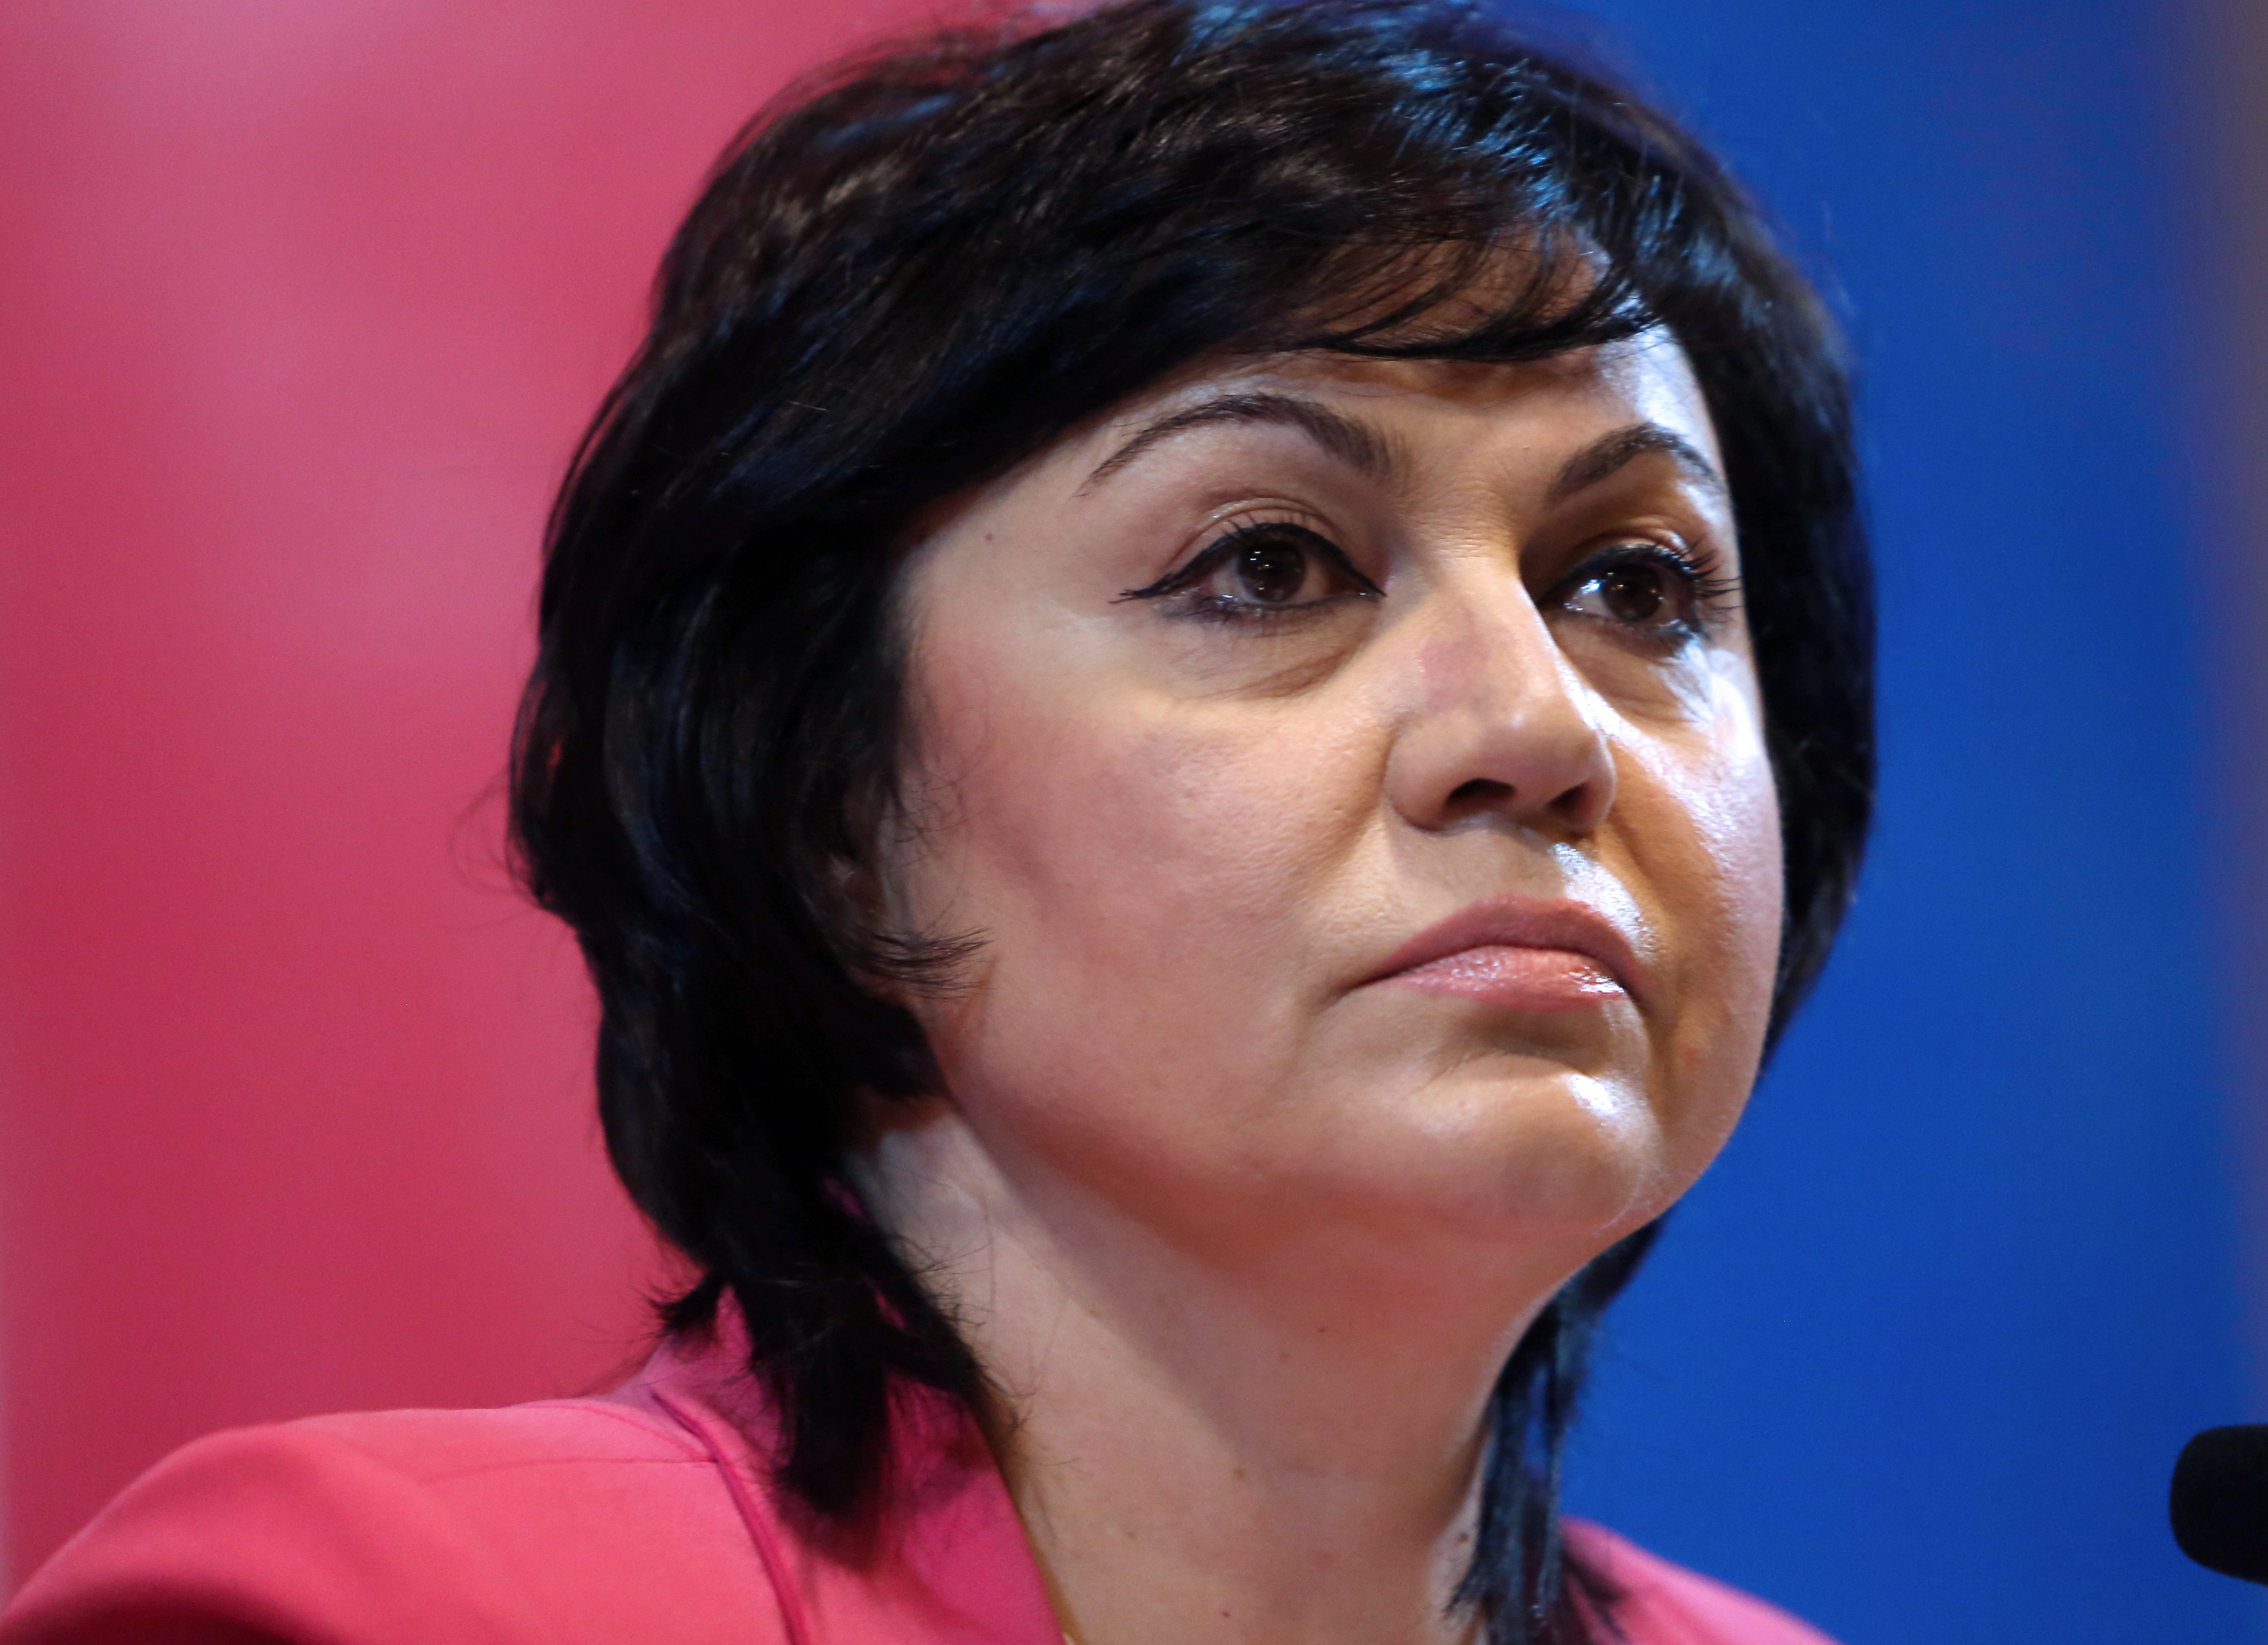 Корнелия Нинова номинирана за вицепрезидент на Социнтерна